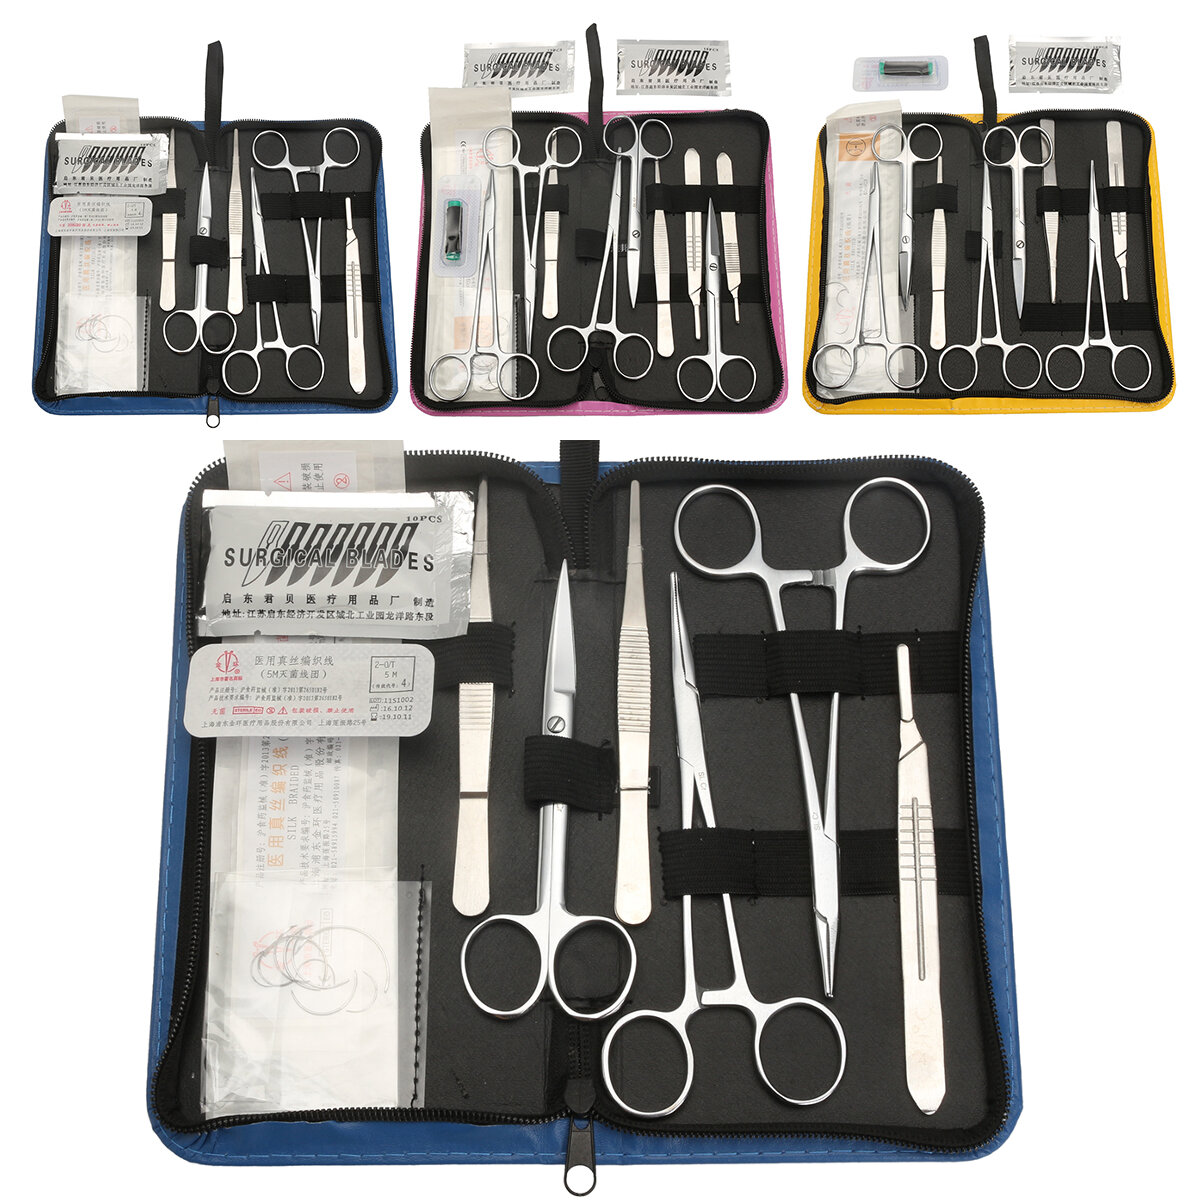 Kit de prática de sutura que inclui um pacote de curso de sutura desenvolvido profissionalmente e uma bolsa de ferramentas.